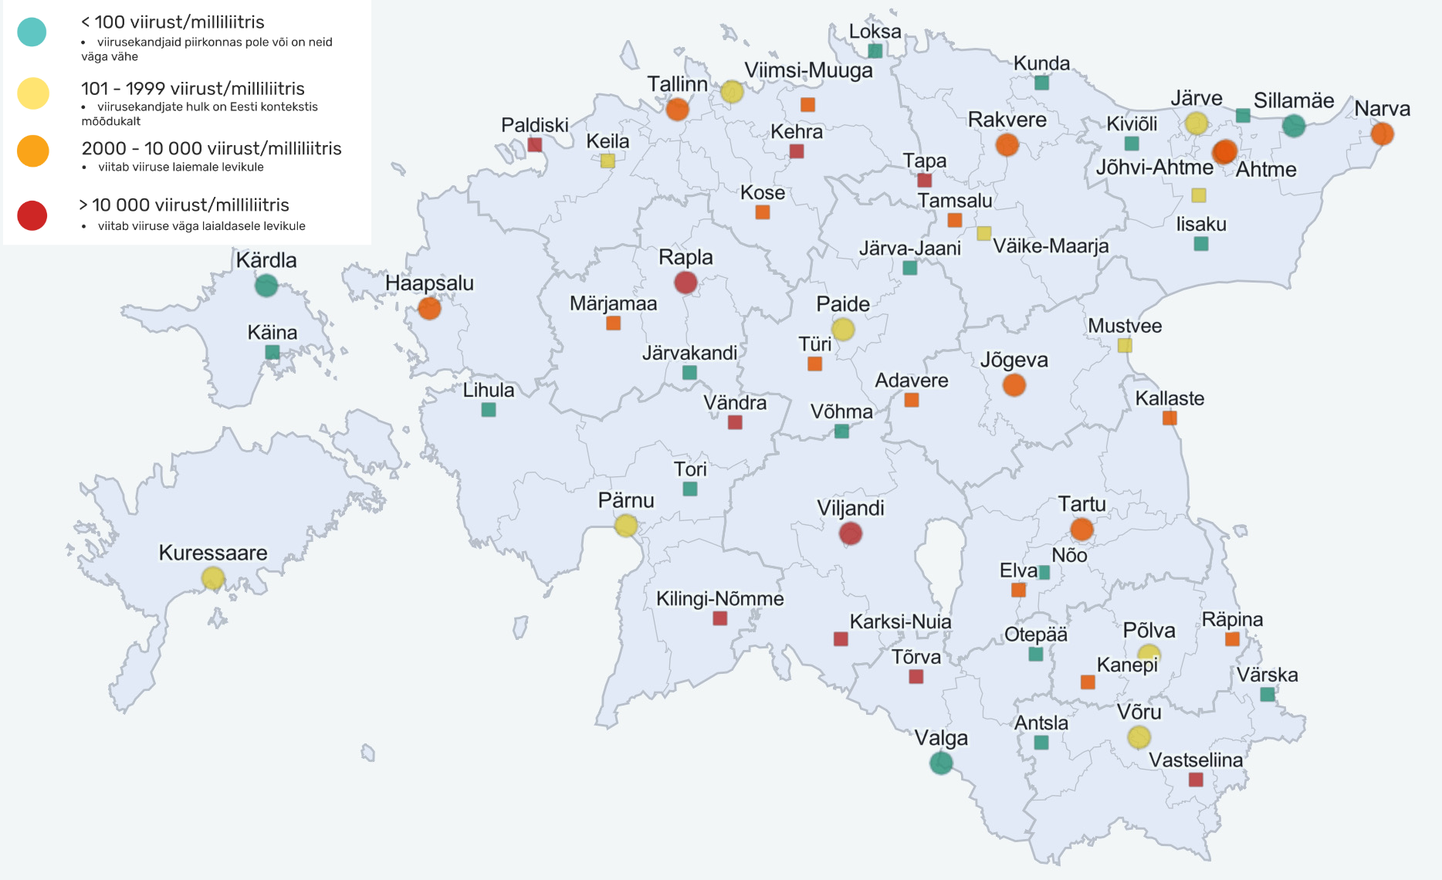 Selle nädalase reoveeuuringu tulemused Eesti kaardil.